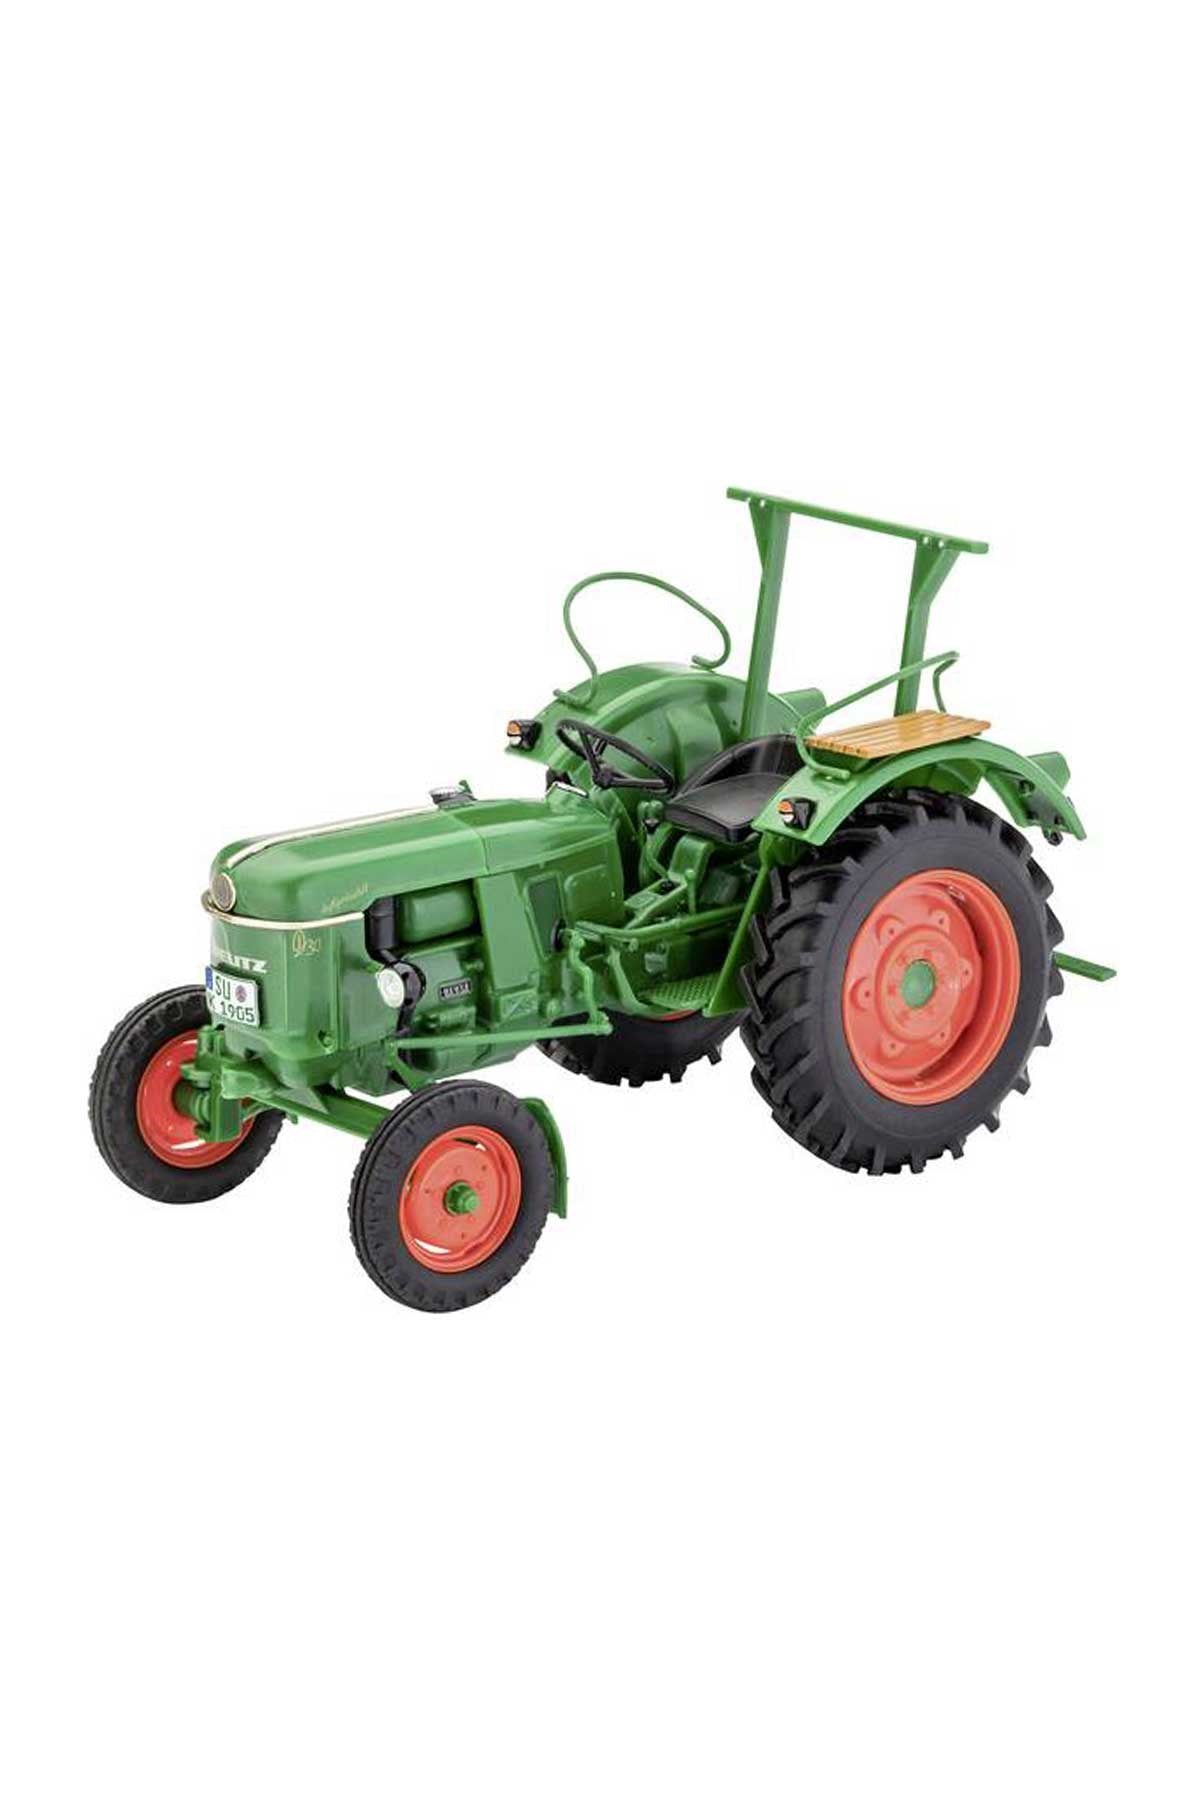 Revell 1:24 Deutz D30 1/24 Model Tractor Kit